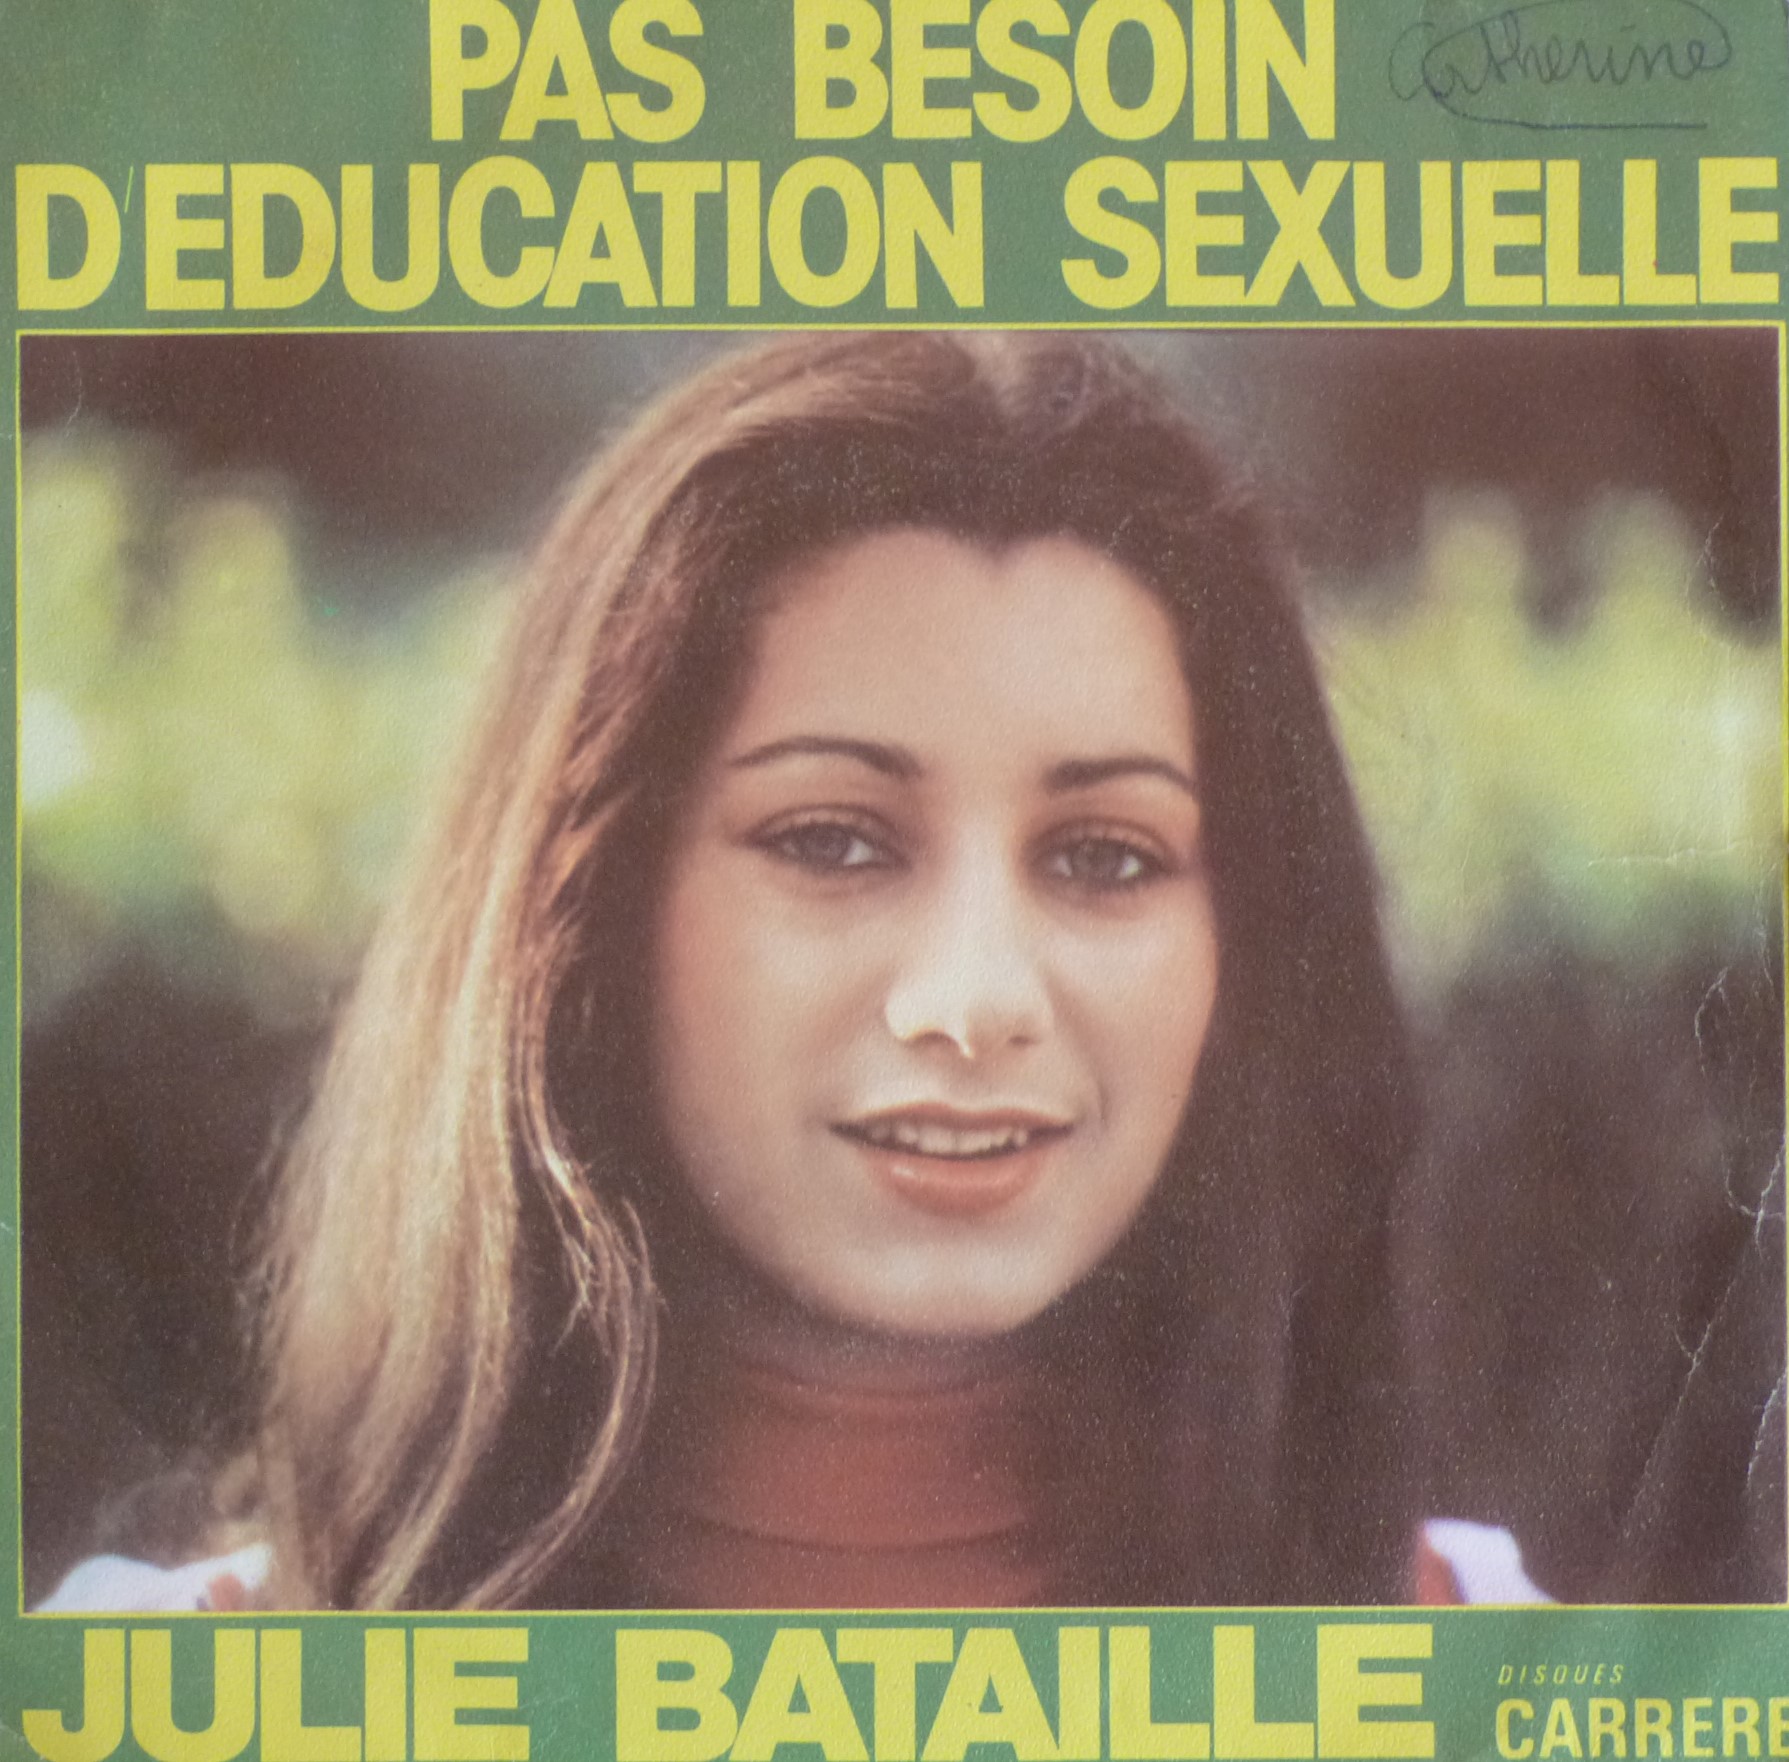 Julie Bataille Pas besoin d'éducation sexuelle